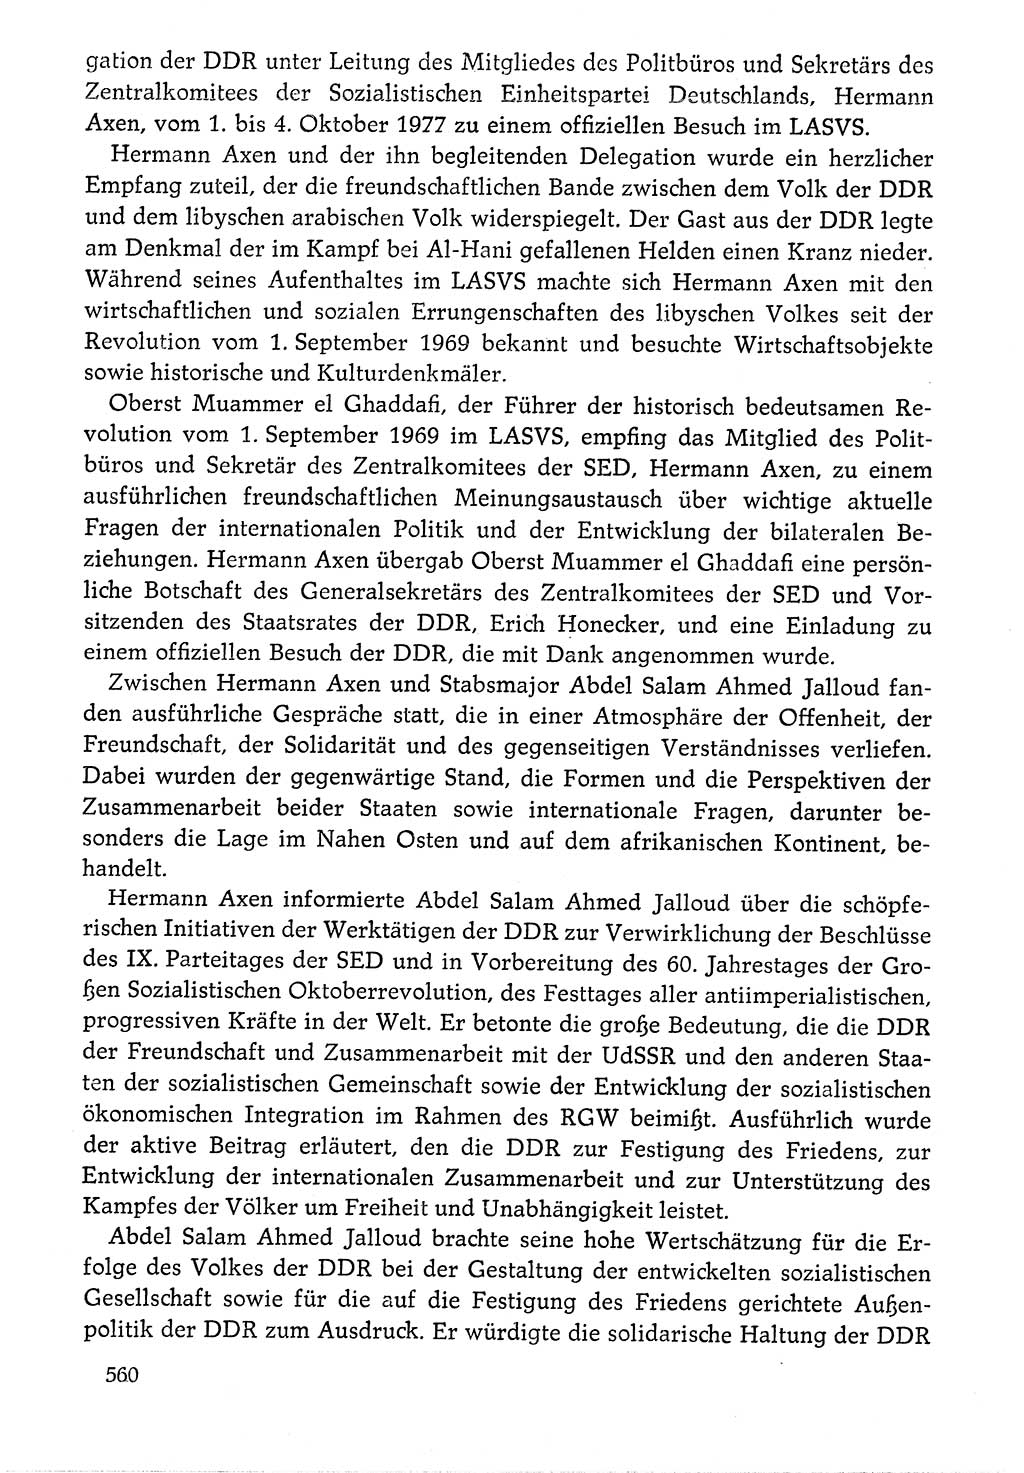 Dokumente der Sozialistischen Einheitspartei Deutschlands (SED) [Deutsche Demokratische Republik (DDR)] 1976-1977, Seite 560 (Dok. SED DDR 1976-1977, S. 560)